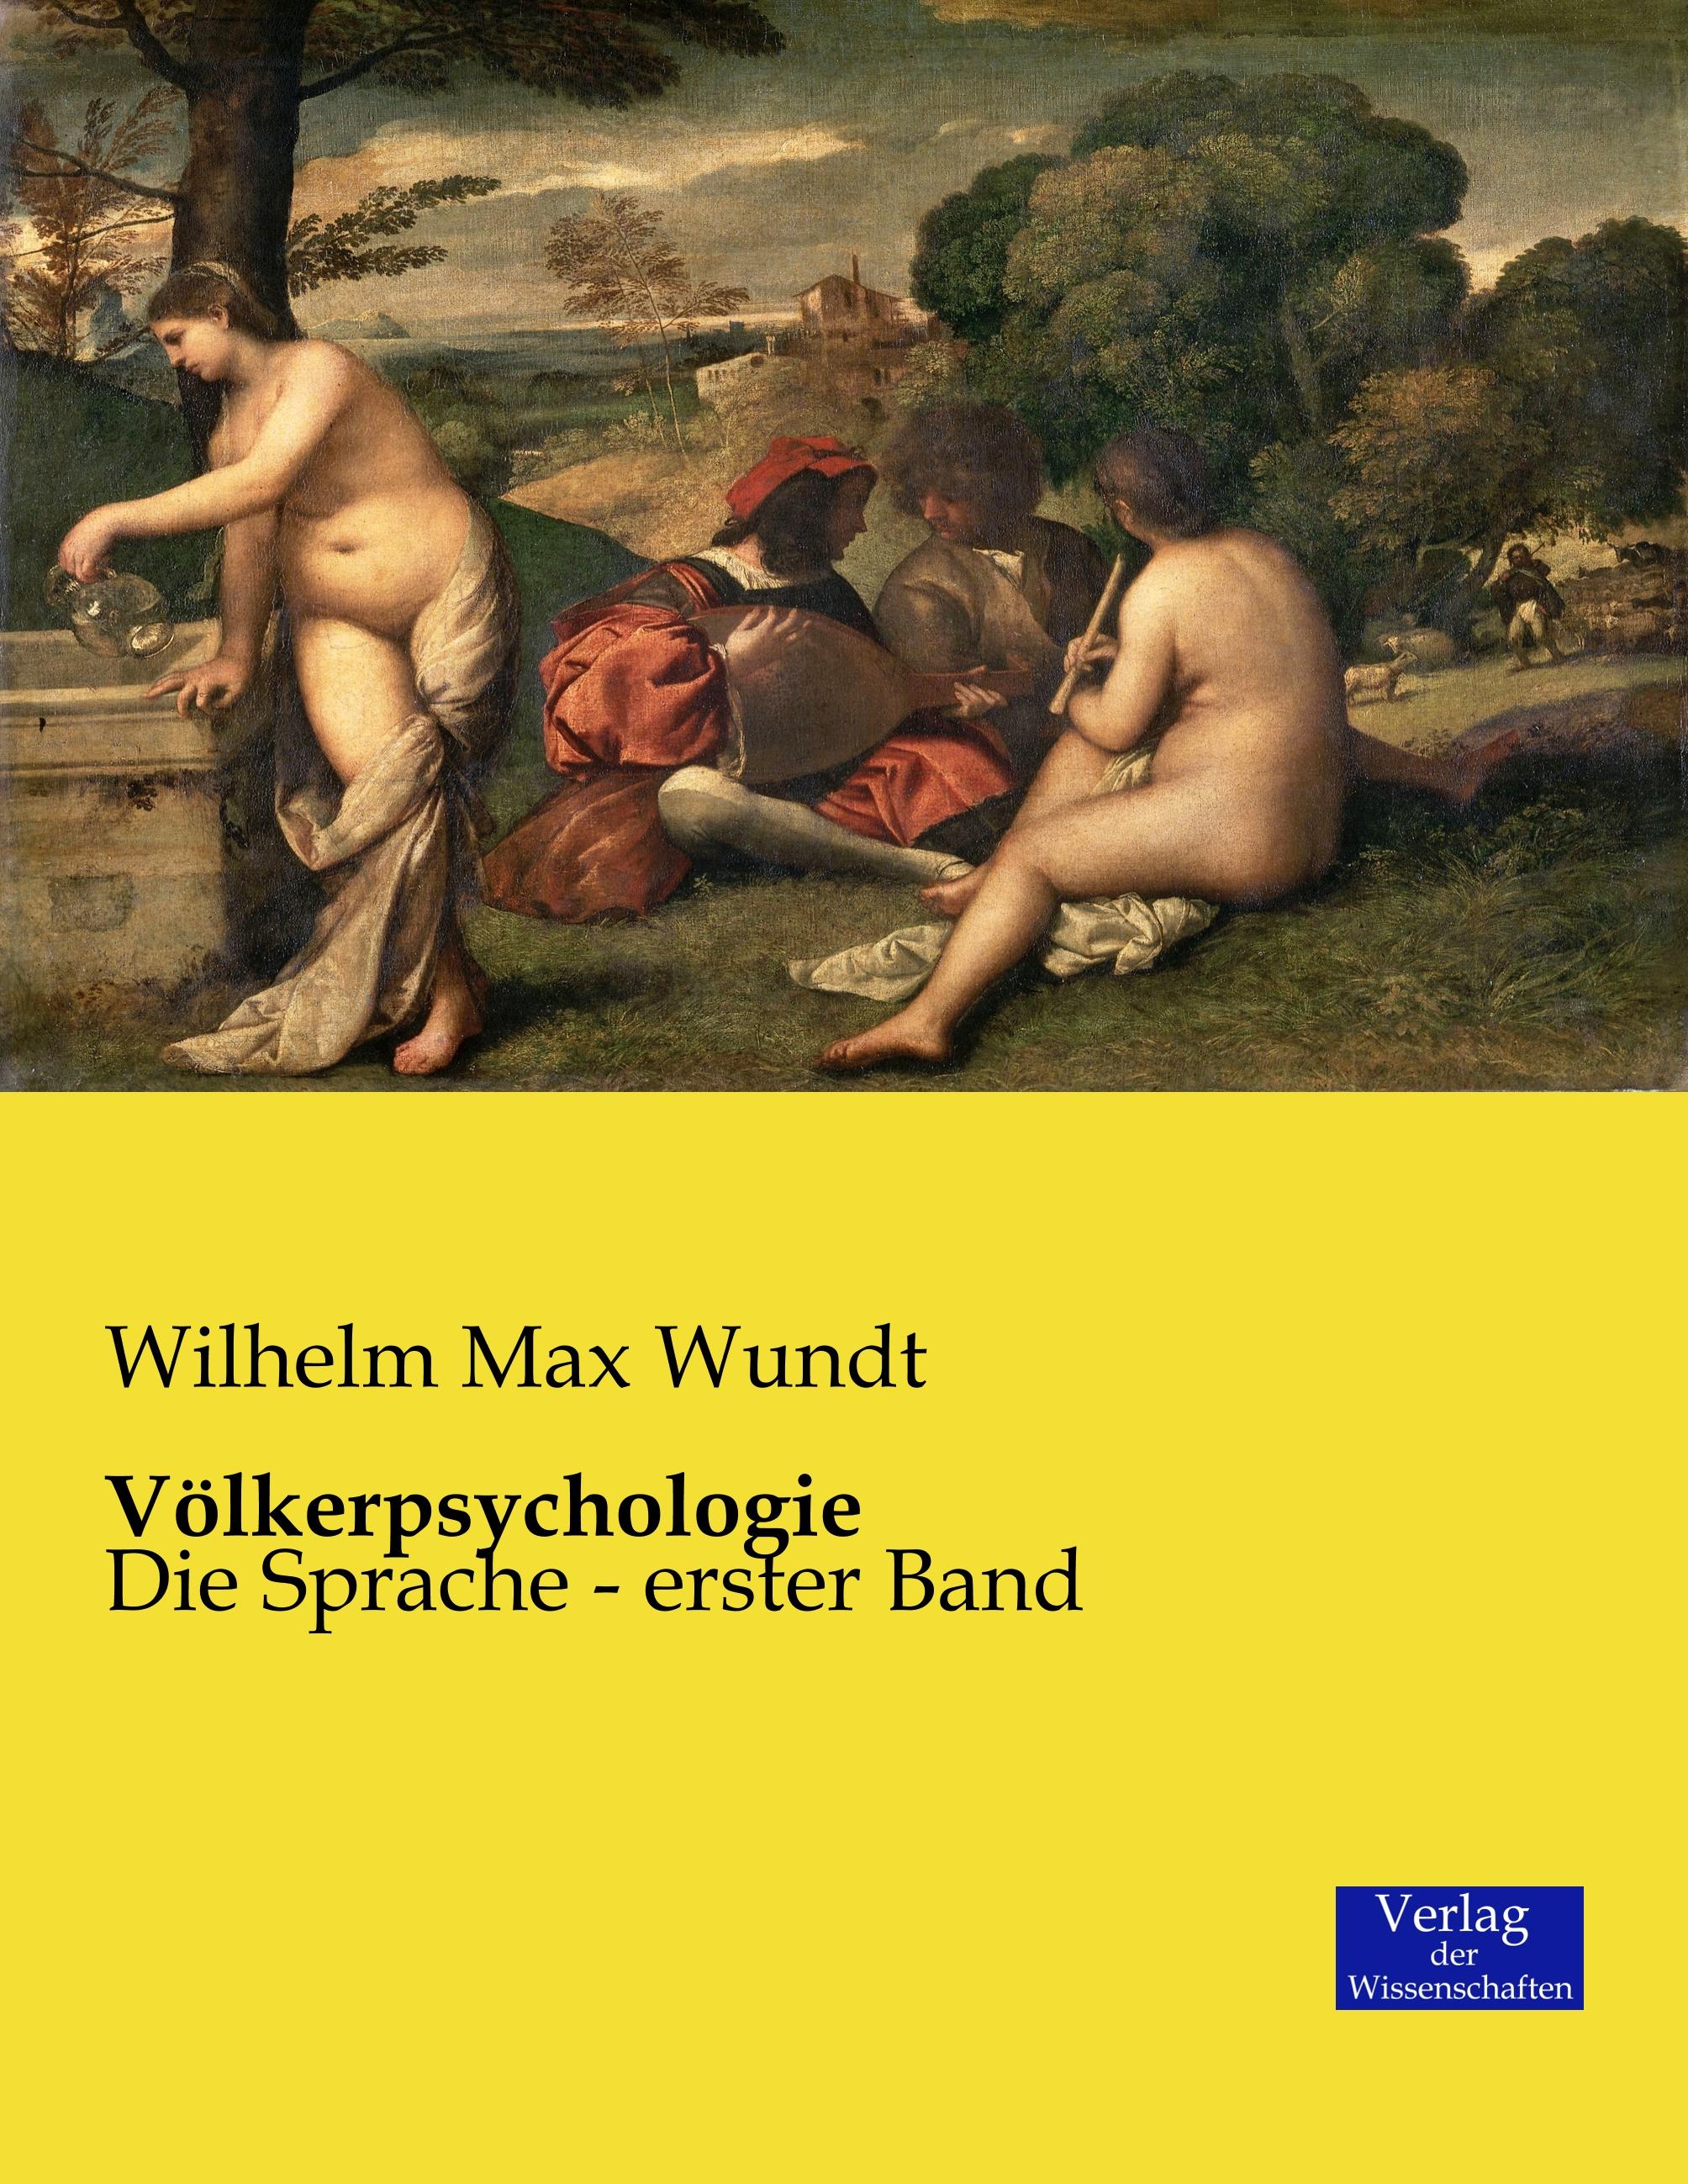 Völkerpsychologie | Die Sprache - erster Band | Wilhelm Max Wundt | Taschenbuch | Paperback | 718 S. | Deutsch | 2019 | Vero Verlag | EAN 9783957005267 - Wundt, Wilhelm Max